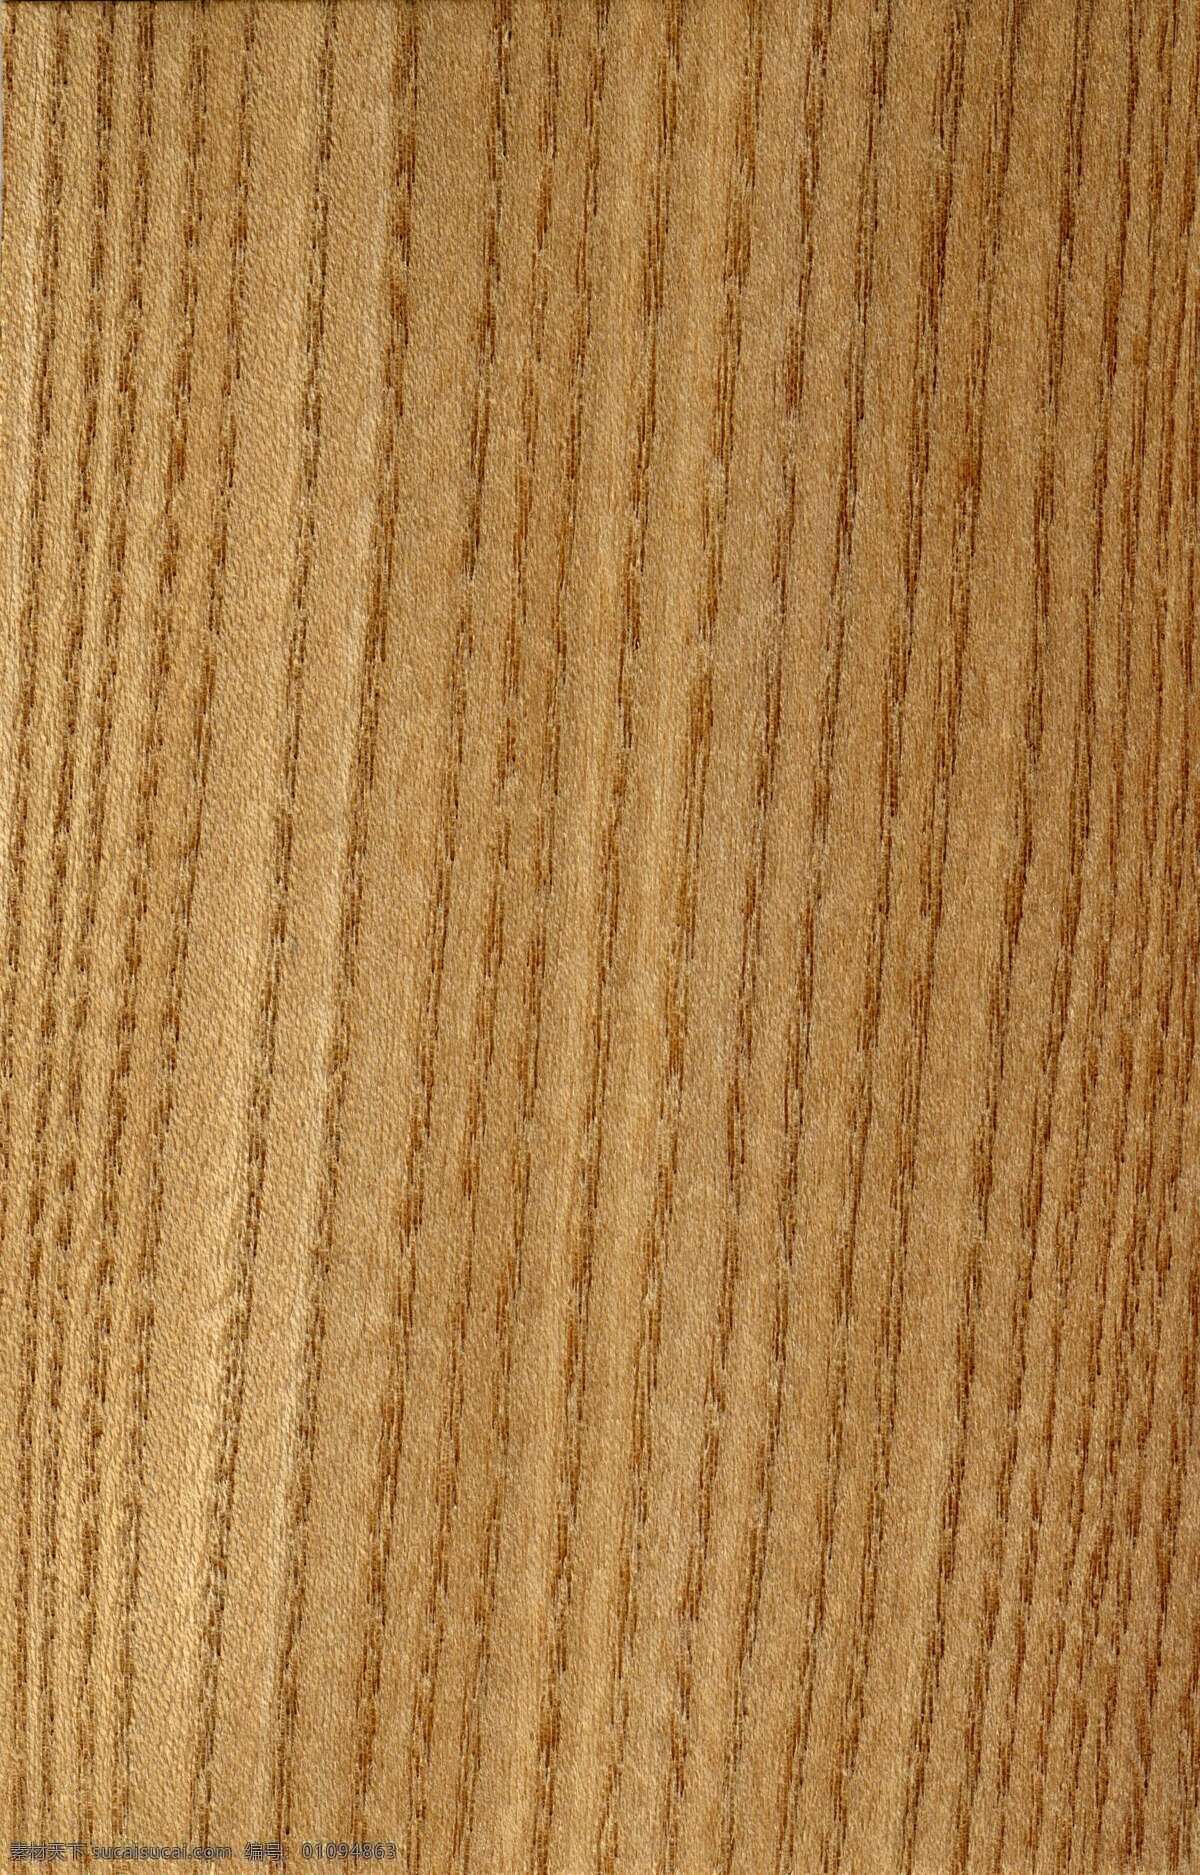 家居 常用 竖 纹 木板 贴图 材质贴图 视觉中国下吧 木纹 木地板 材质 木材贴图 高清 地板 贴 皮 3d 渲染 面板 全套 设计本材质库